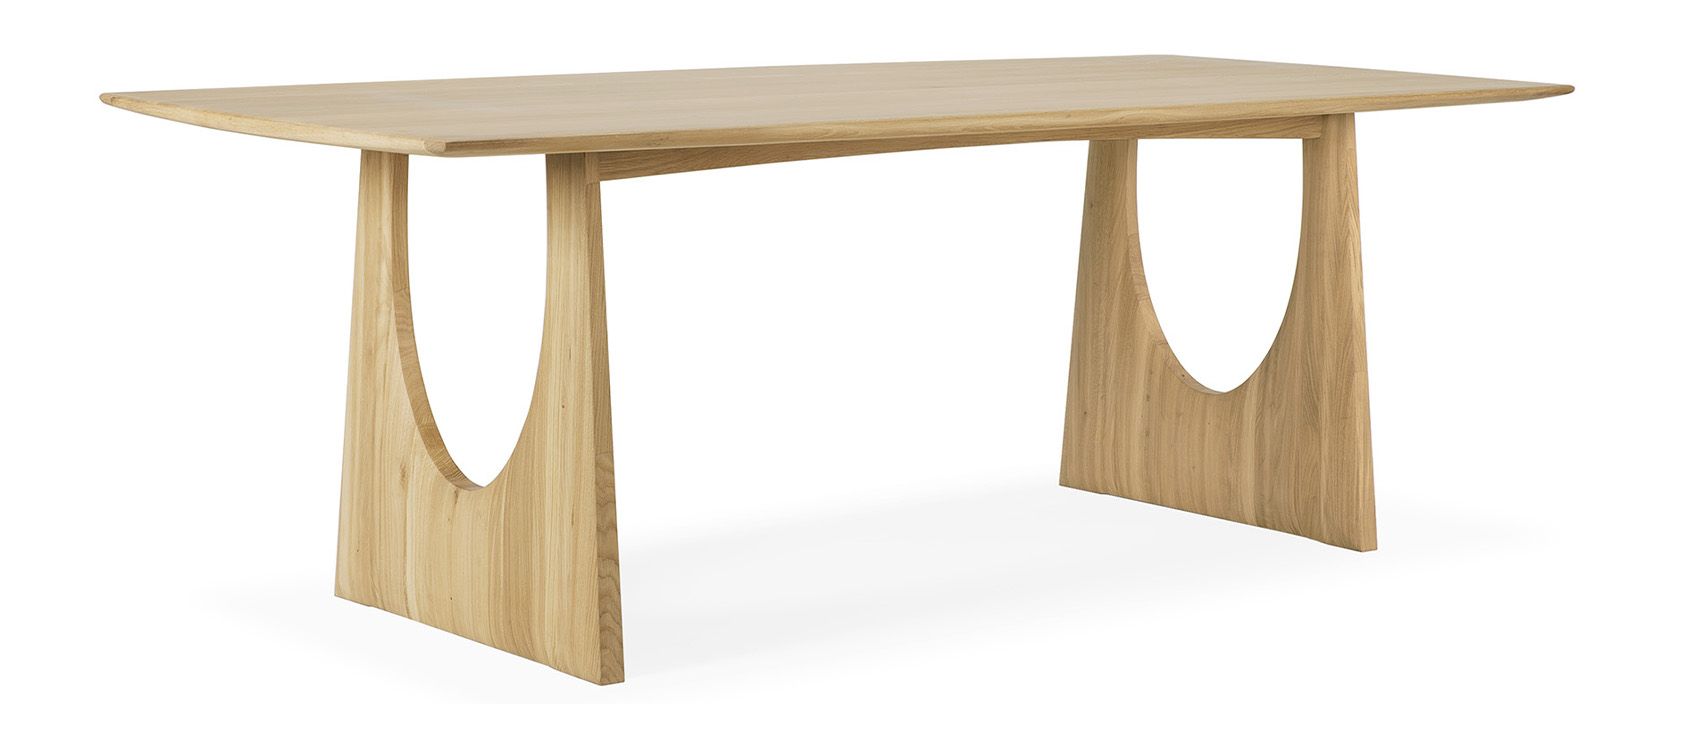 Ethnicraft designové jídelní stoly Oak Geometric Dining Table (220 cm) - DESIGNPROPAGANDA